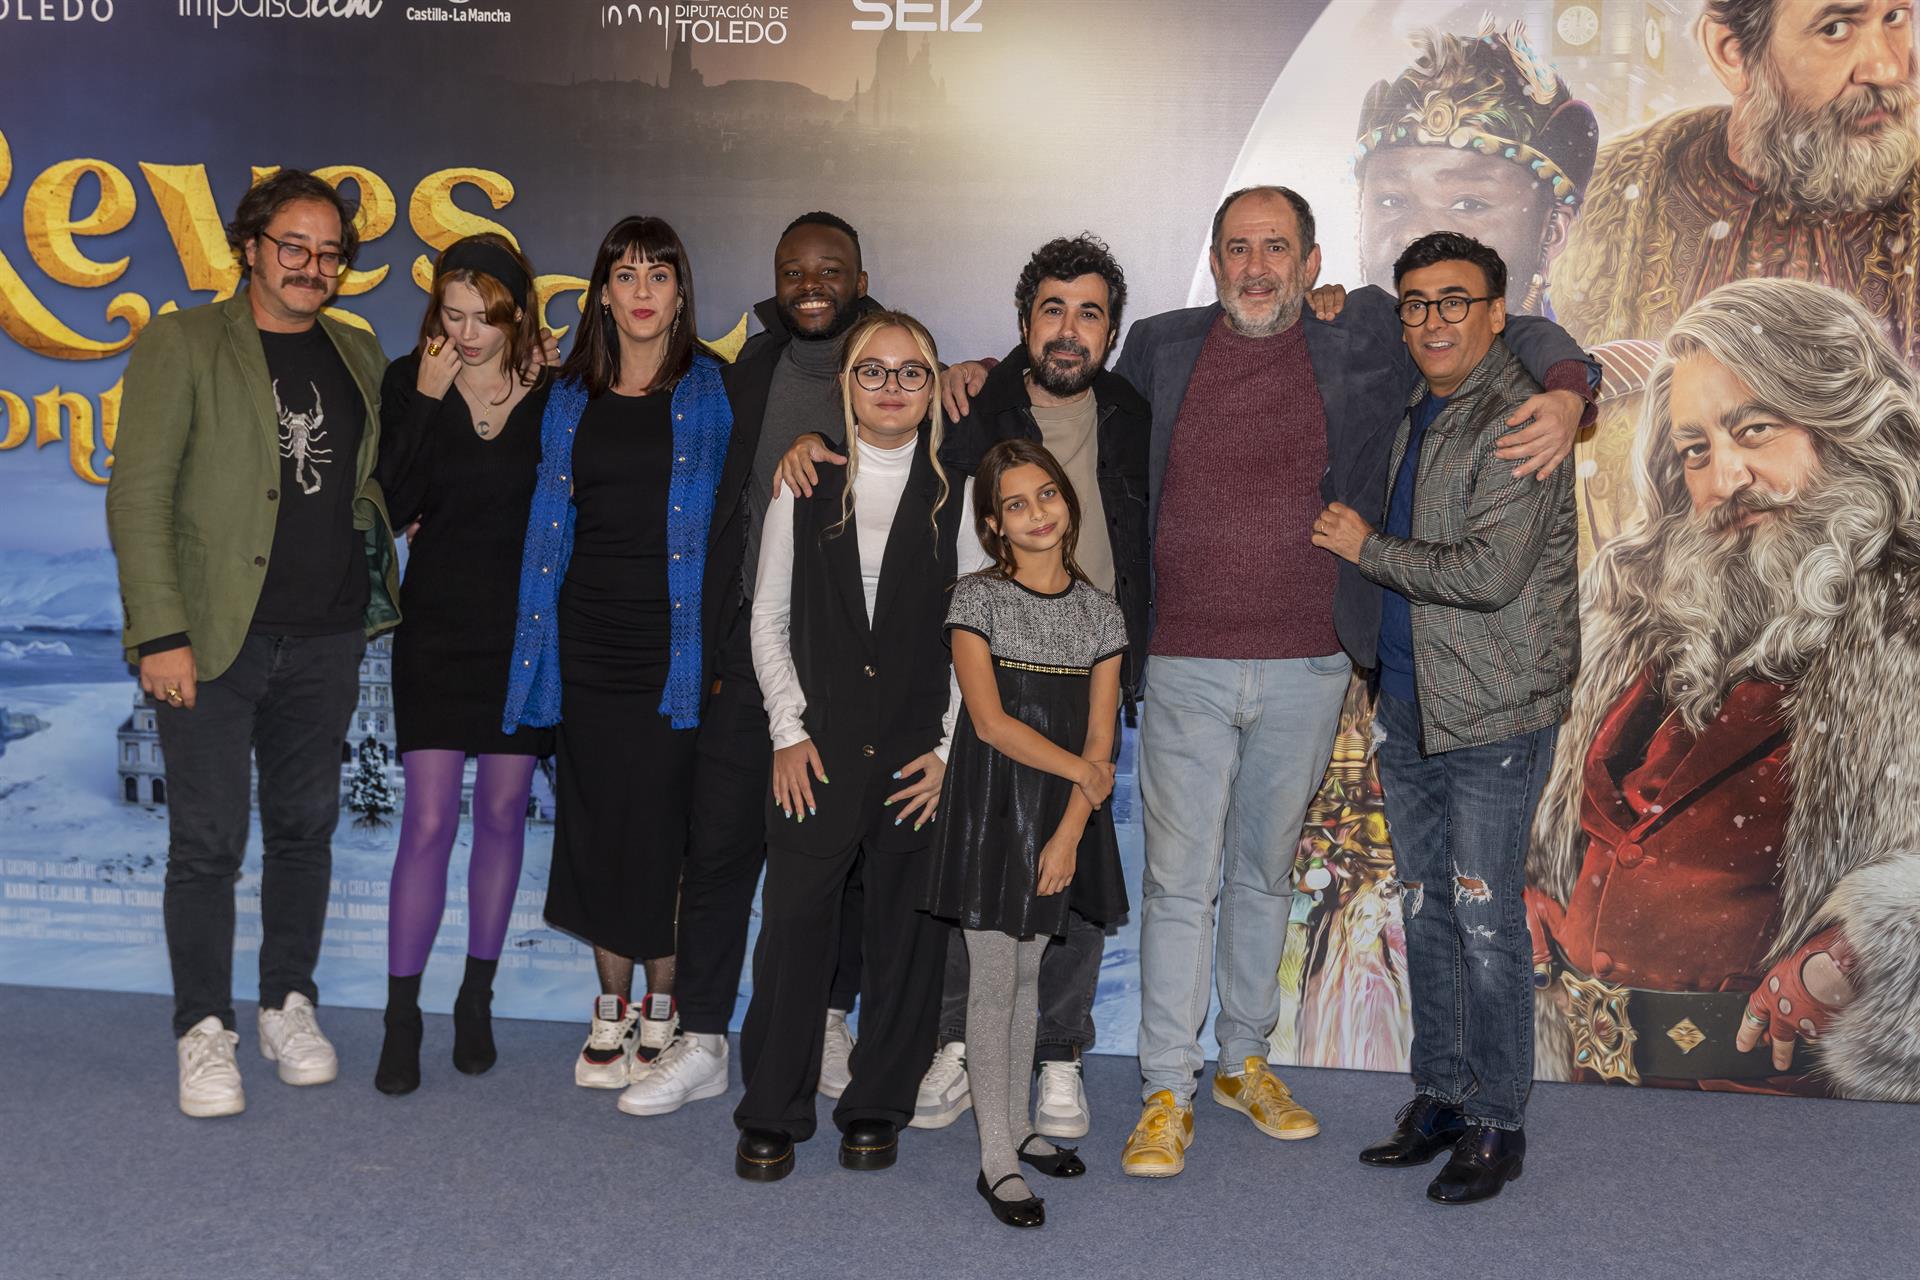 El equipo de la película "Reyes contra Santa" a su llegada hoy viernes al Festival de Cine y la Palabra (CiBRA), que se celebra en Toledo. EFE/Ismael Herrero.